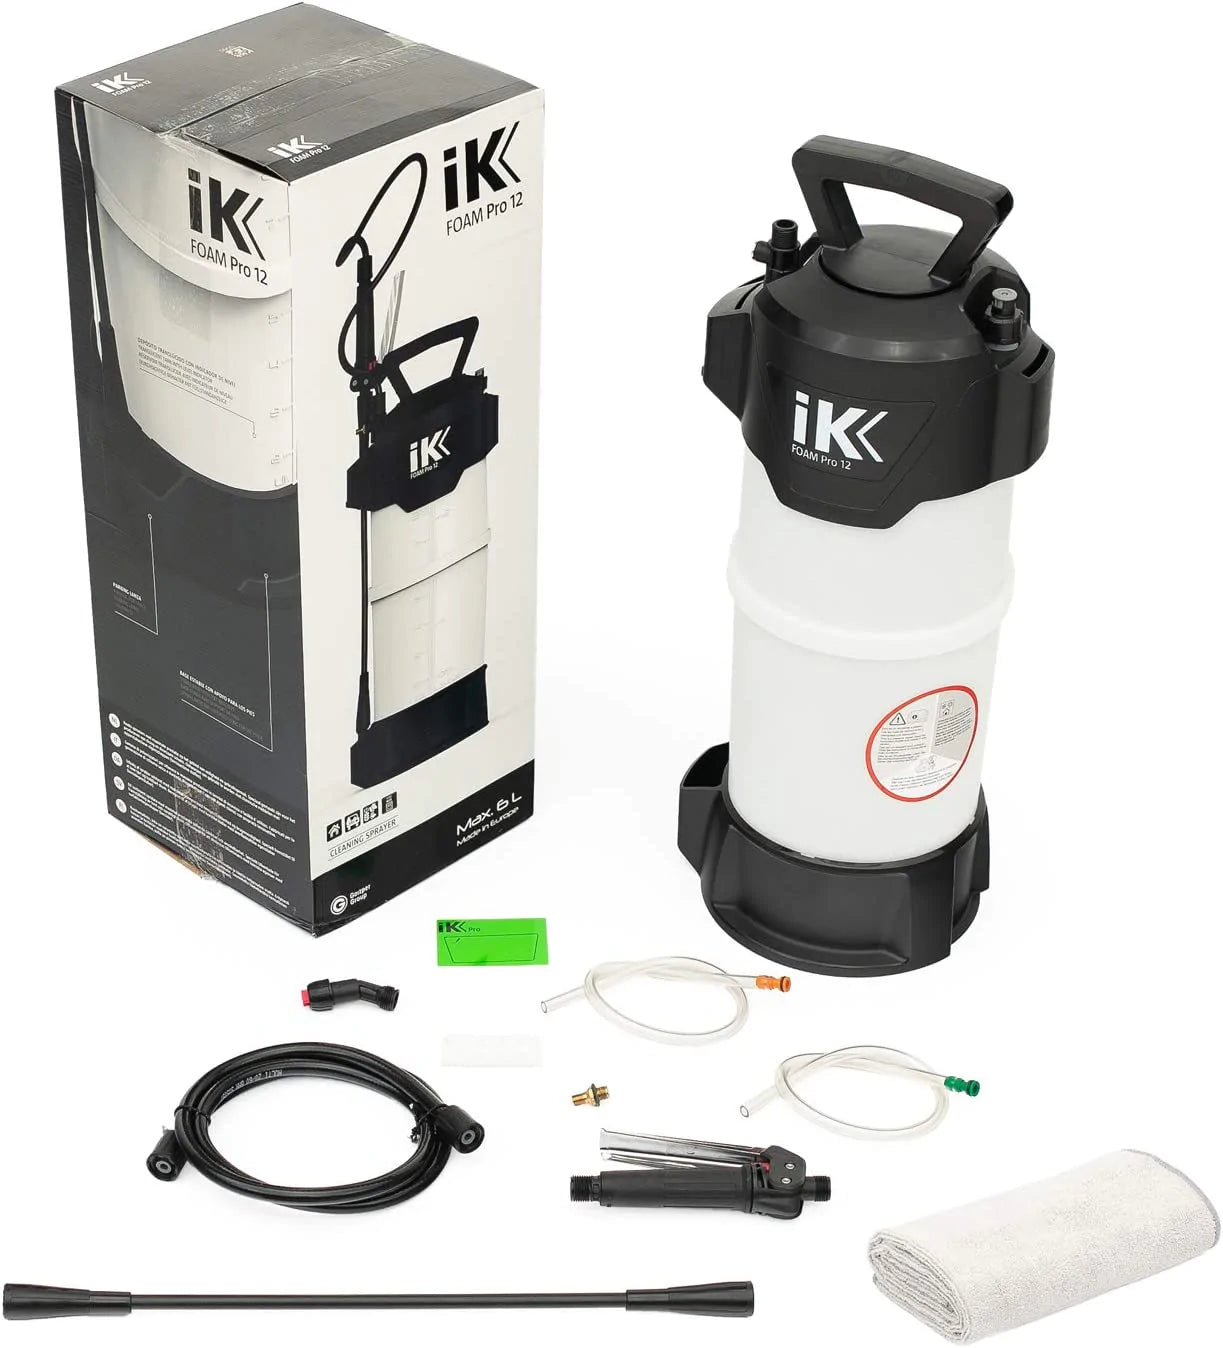 IK 12 Foam Pro Sprayer by Frasers Aerospace